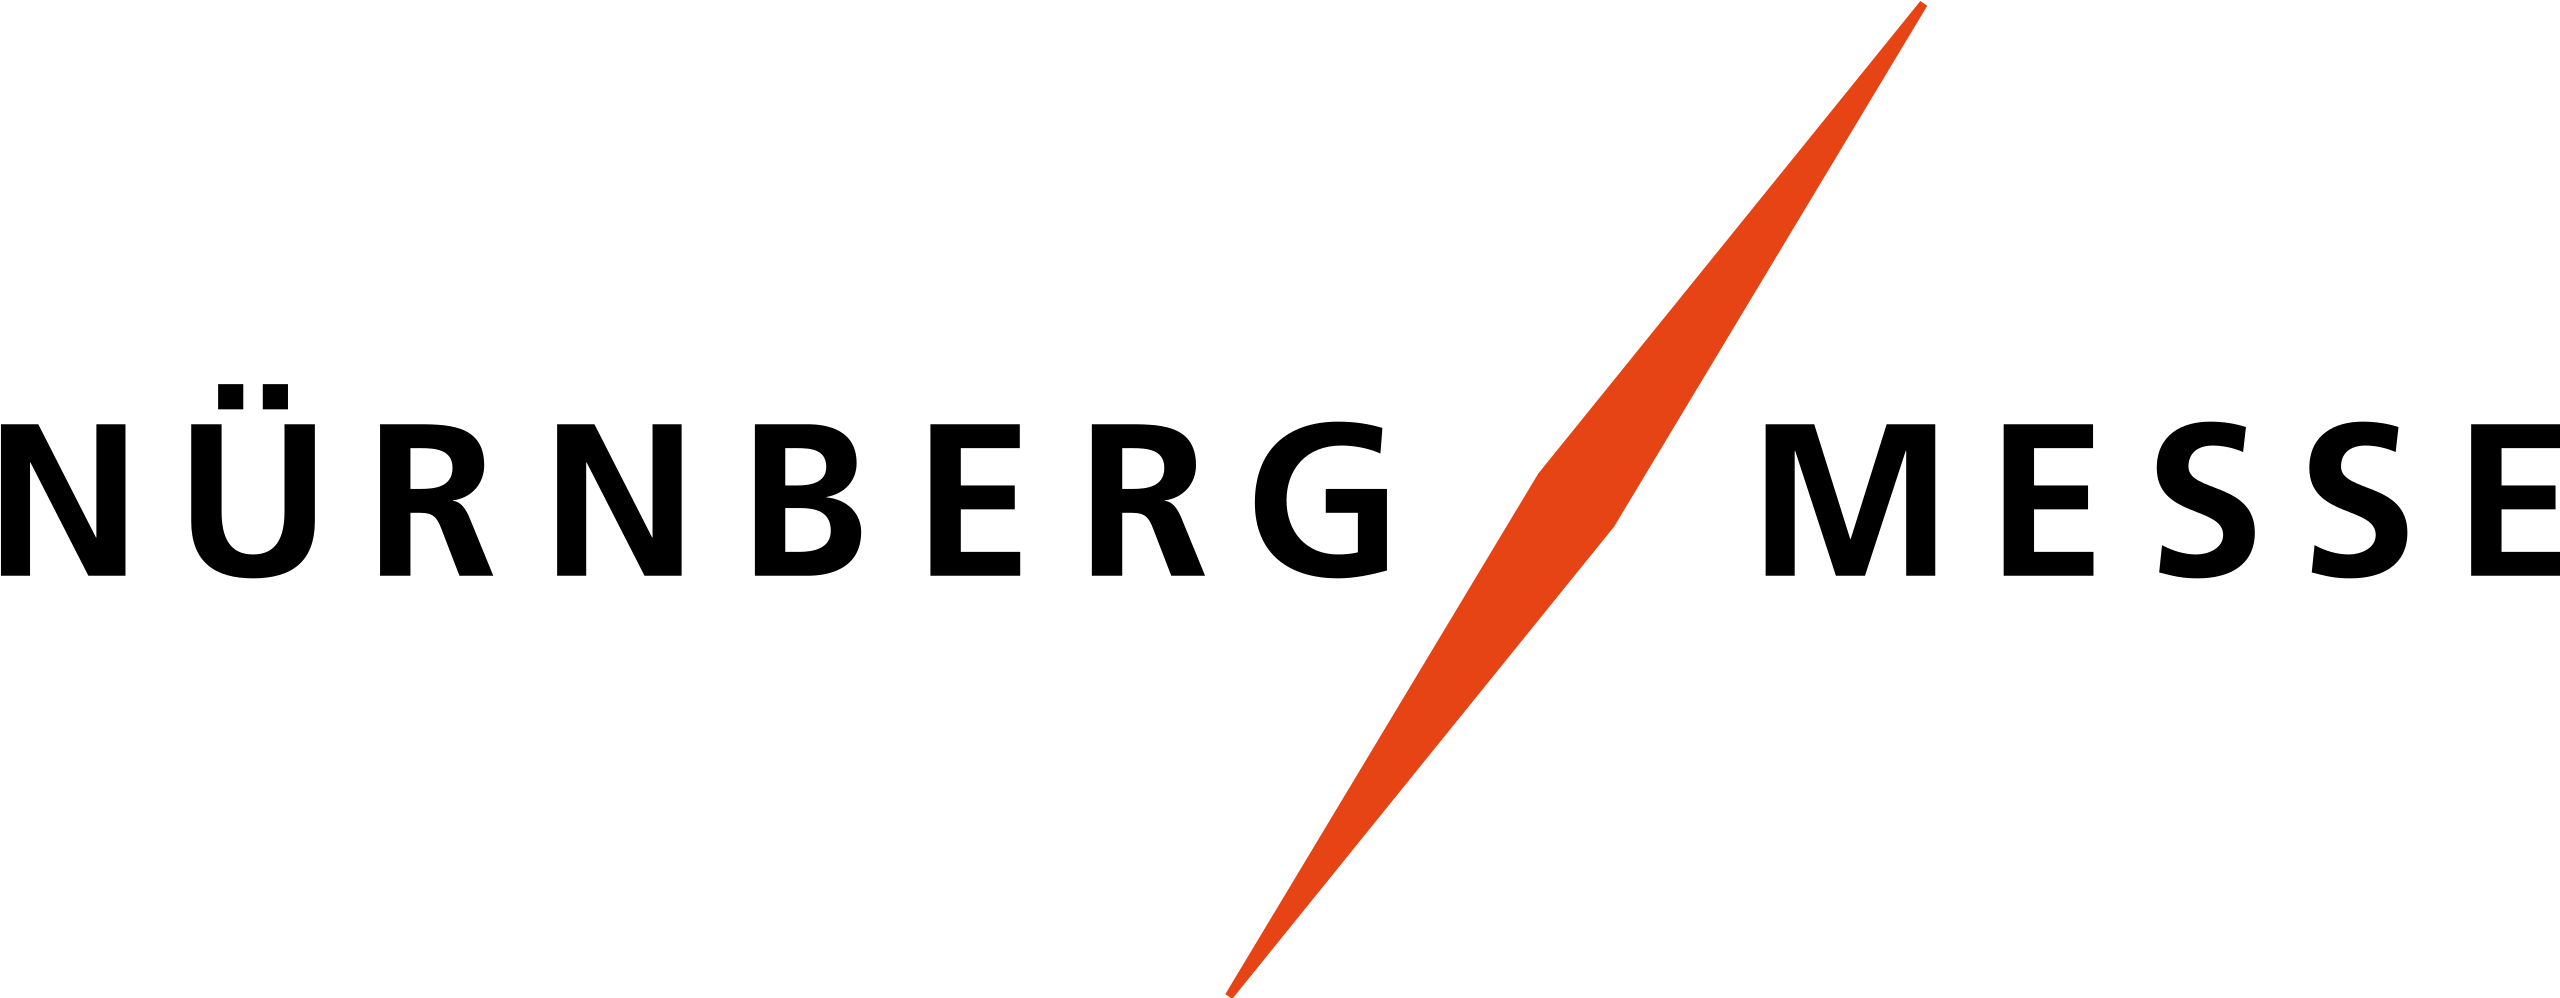 Logo-Messe-Nuernberg.svg